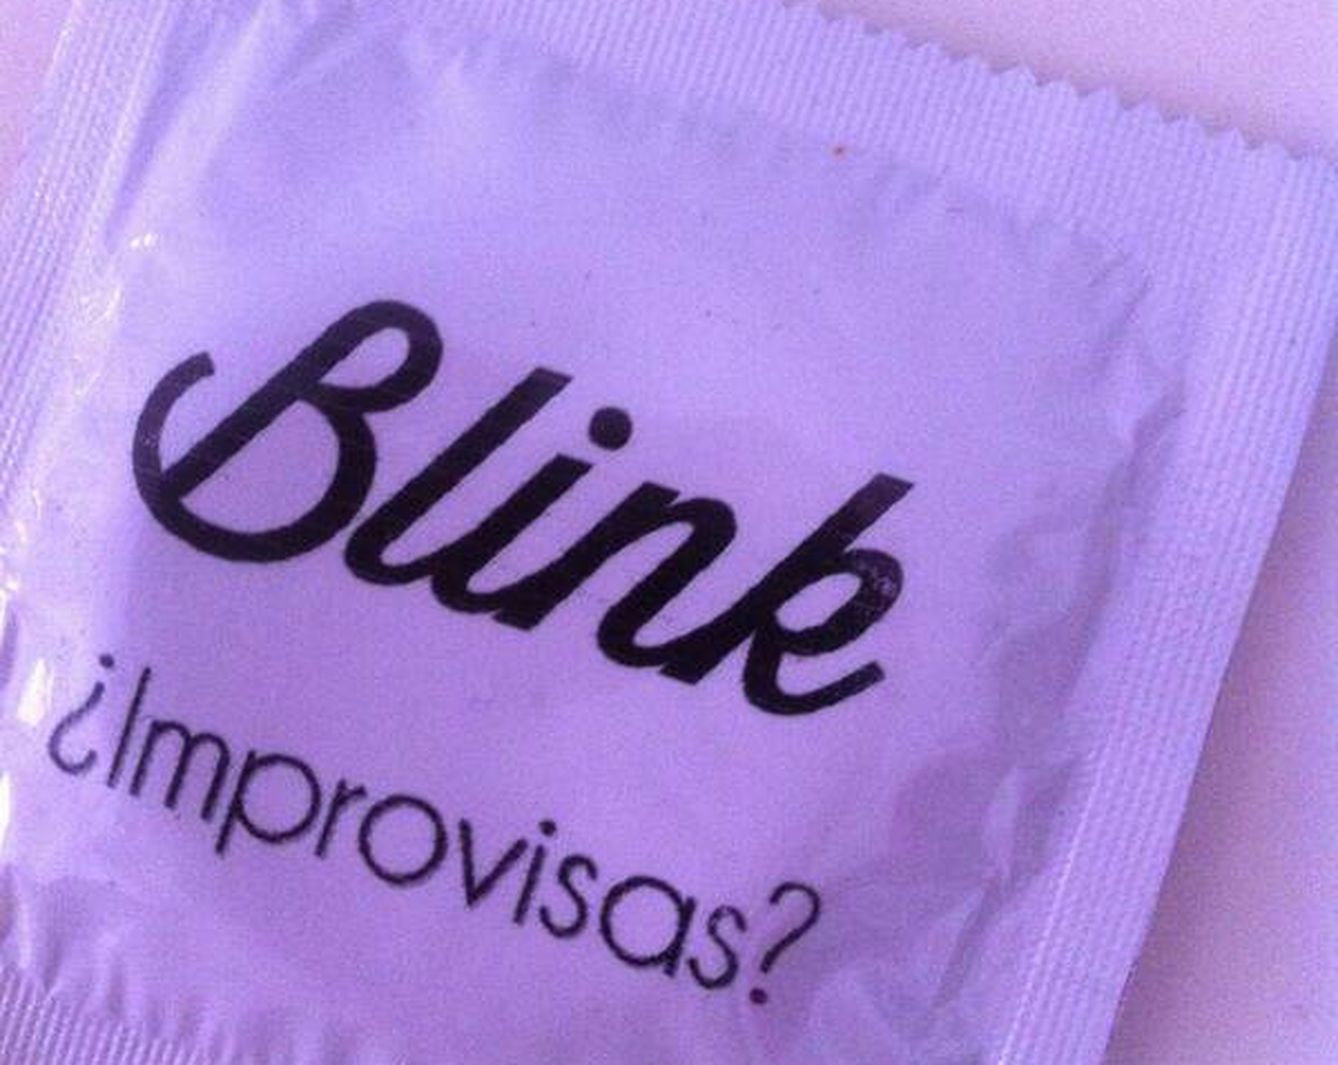 Blink regalaba condones a cambio de descargas para promocionarse.